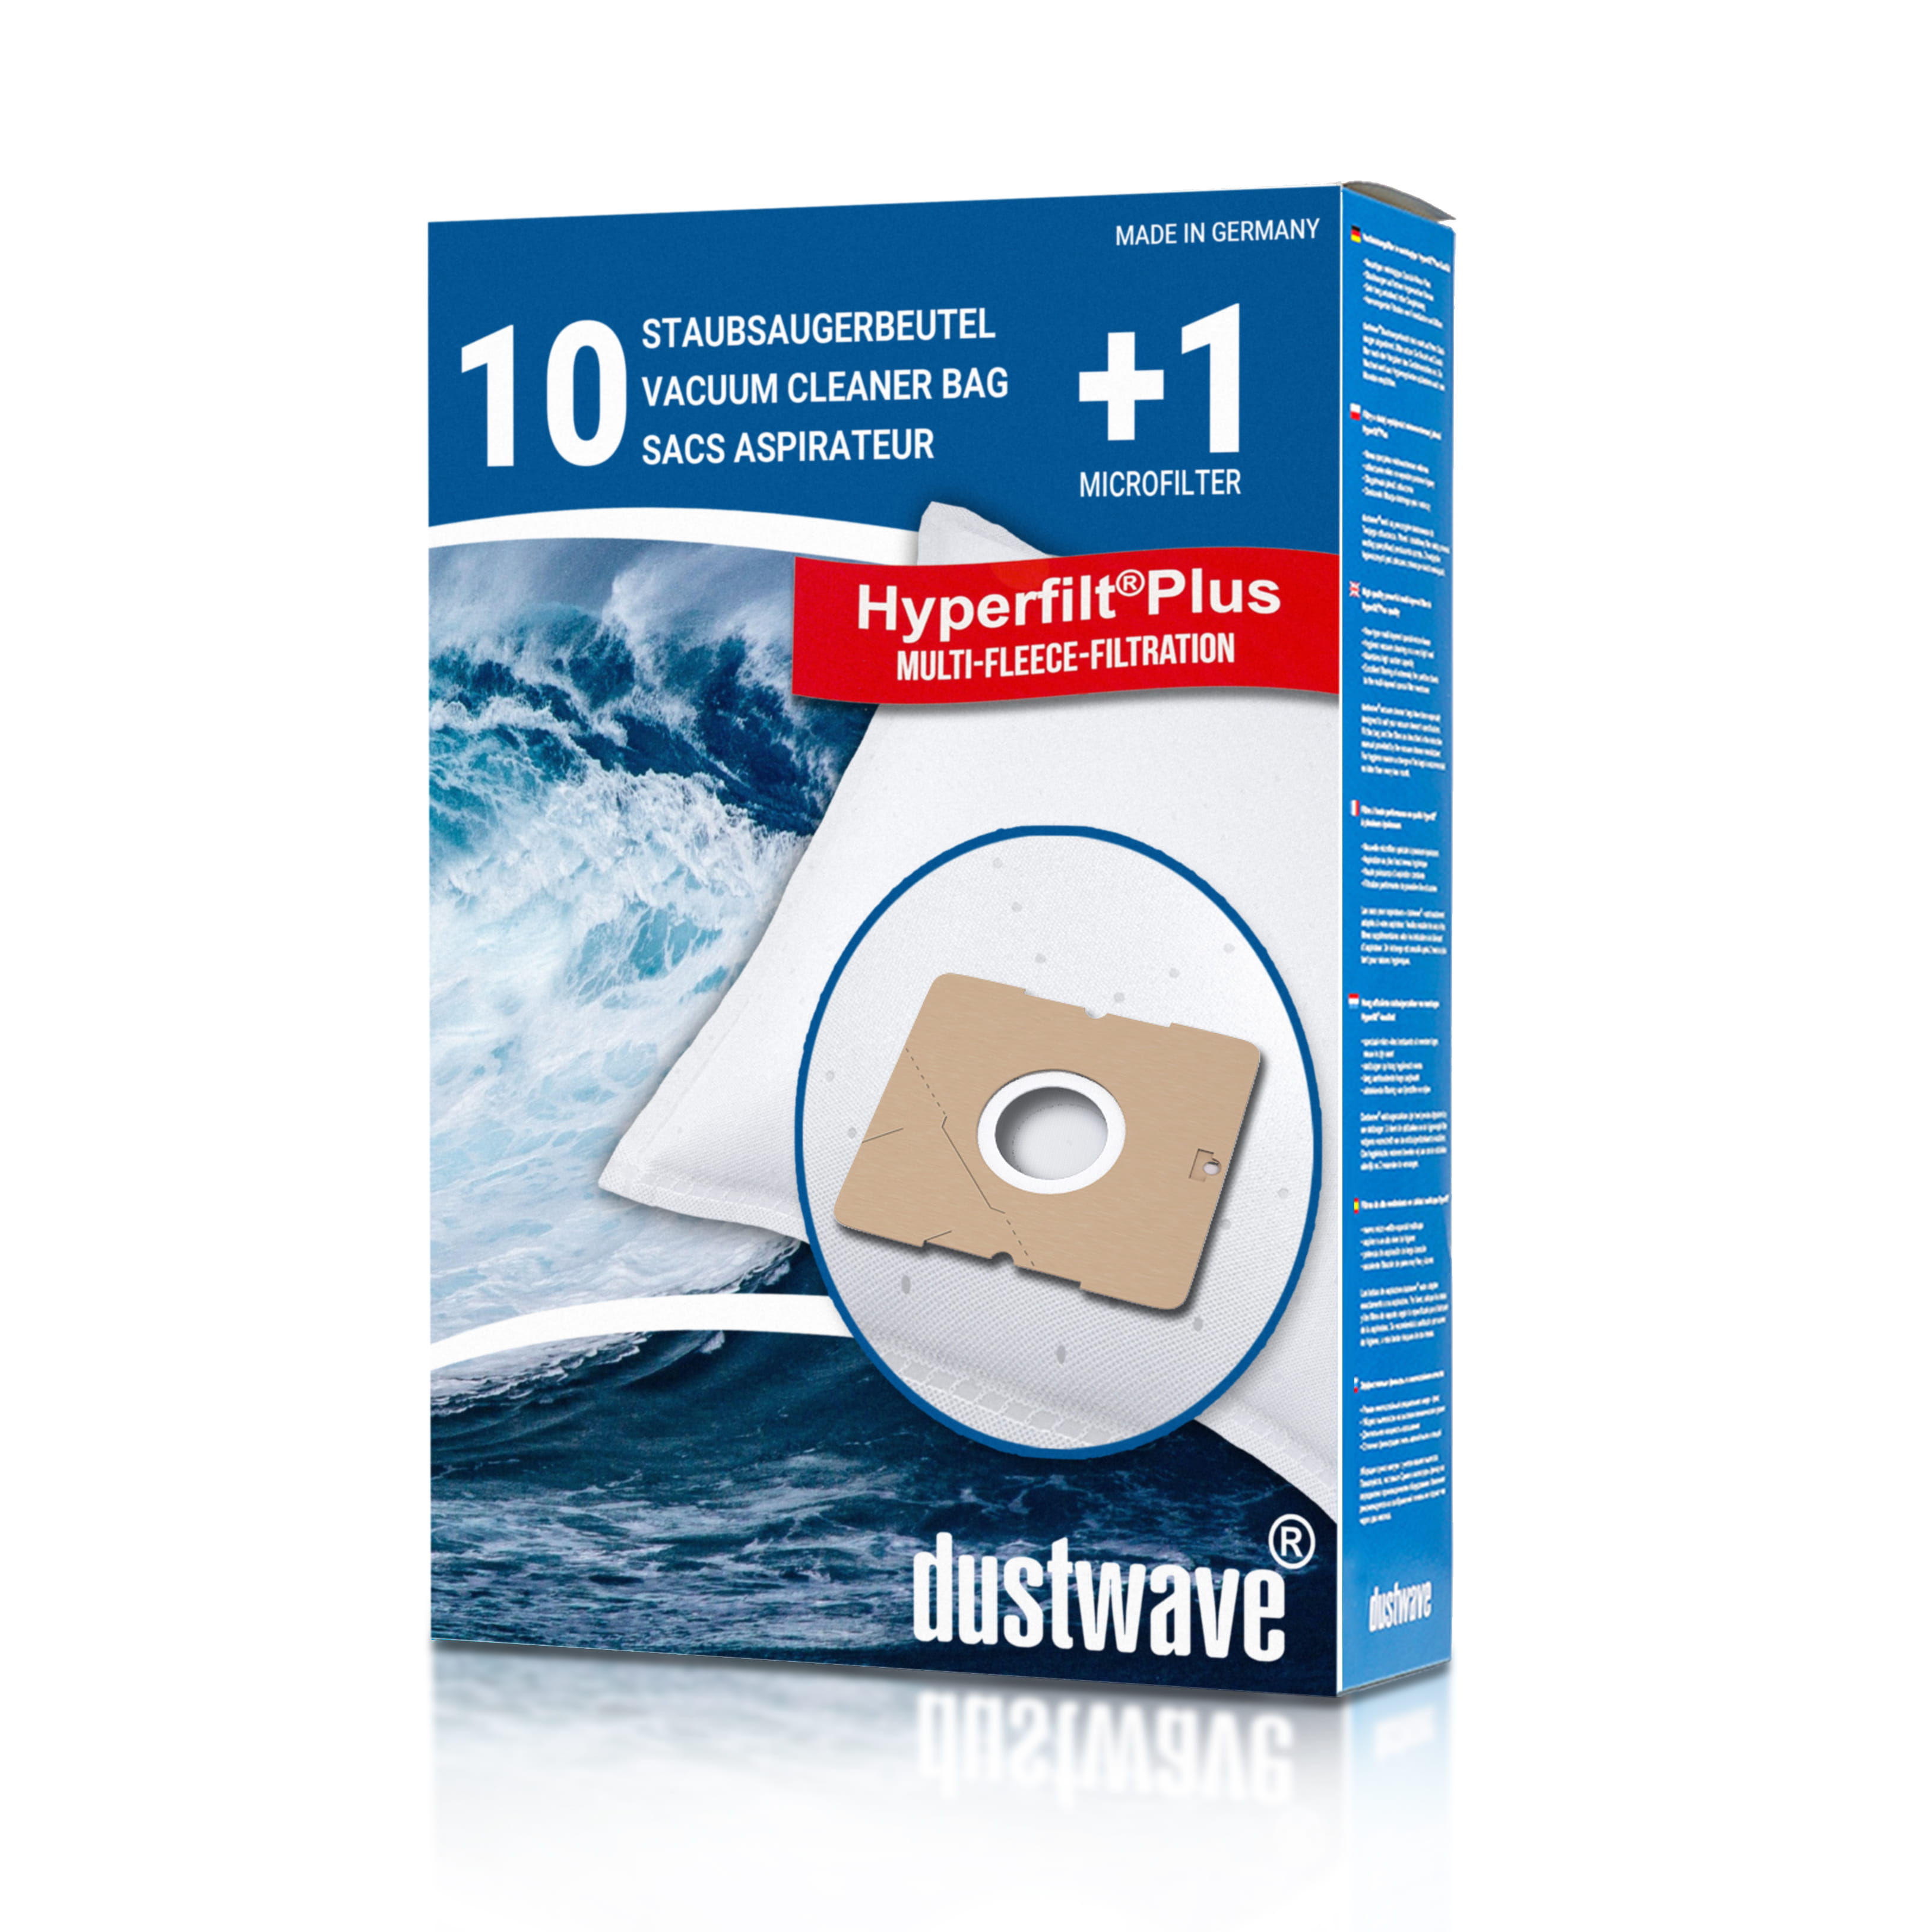 Dustwave® 10 Staubsaugerbeutel für Aldi DIV 350 / DIV350 - hocheffizient mit Hygieneverschluss - Made in Germany